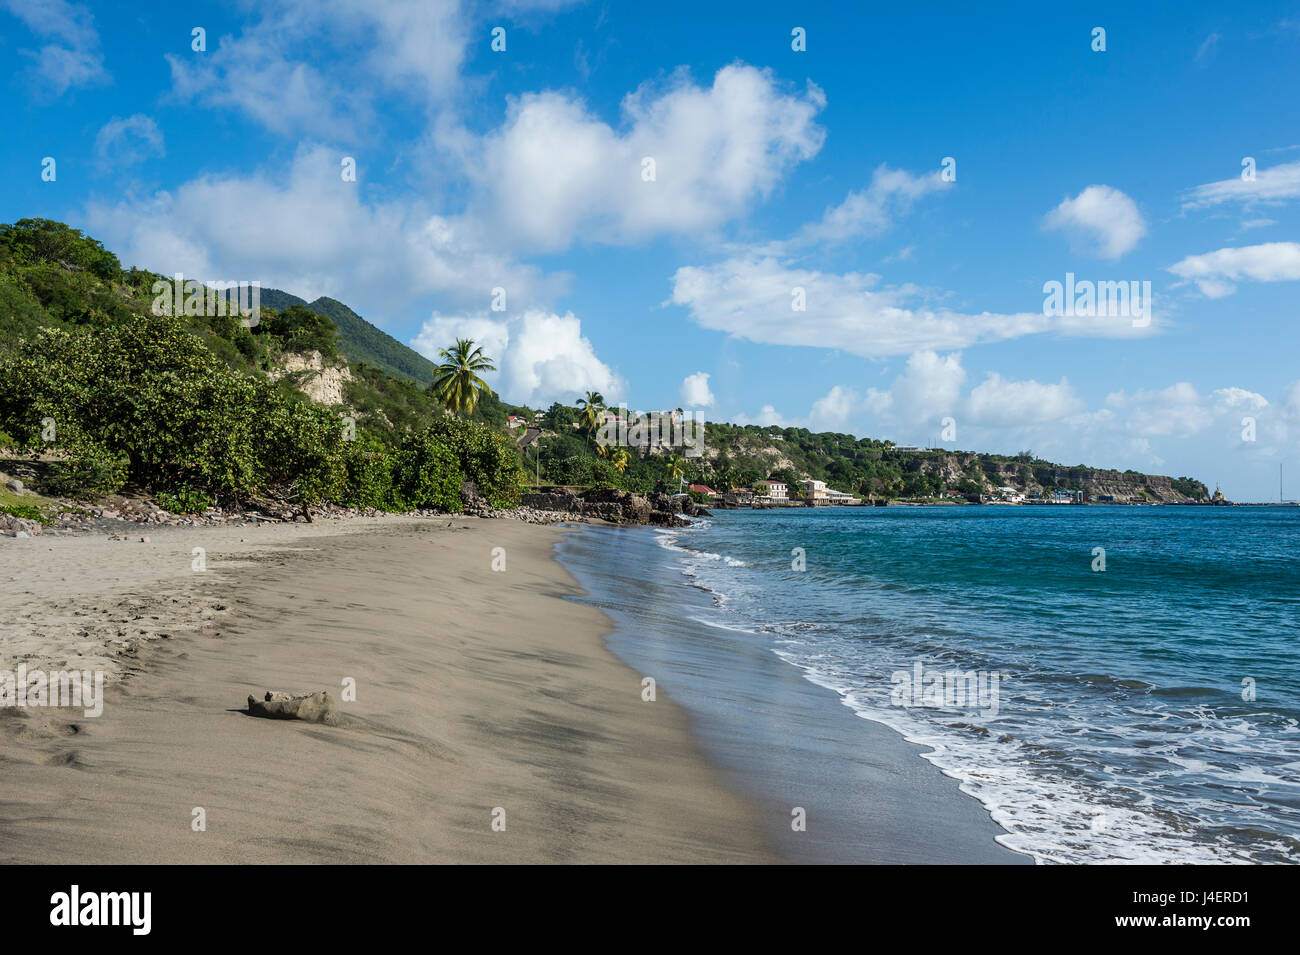 La plage de Oranjestad, Saint-Eustache, Statia, Netherland Antilles, Antilles, Caraïbes, Amérique Centrale Banque D'Images